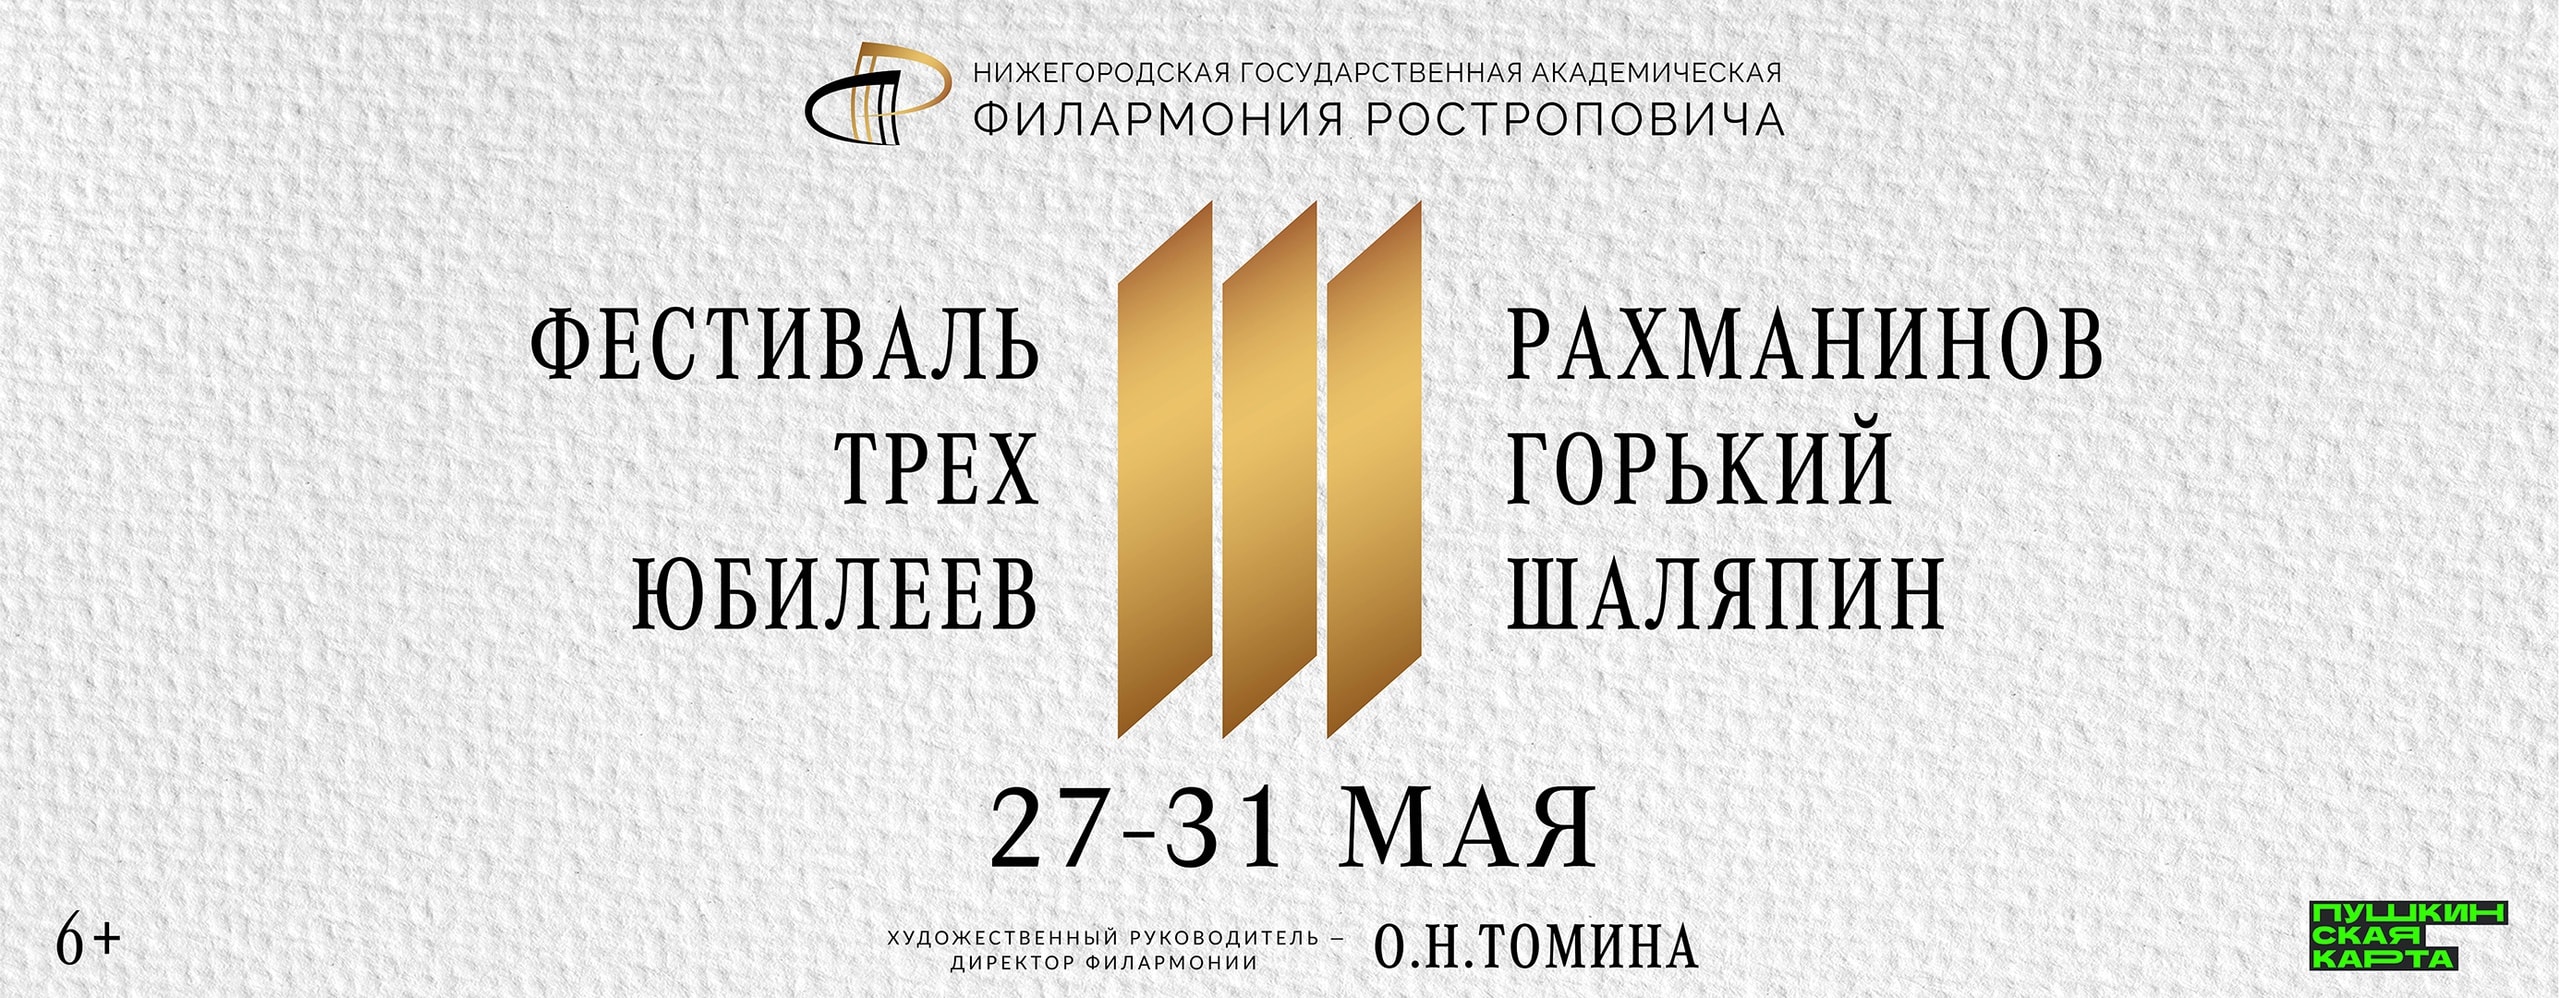 Фестиваль трех юбилеев пройдет в Нижегородской филармонии